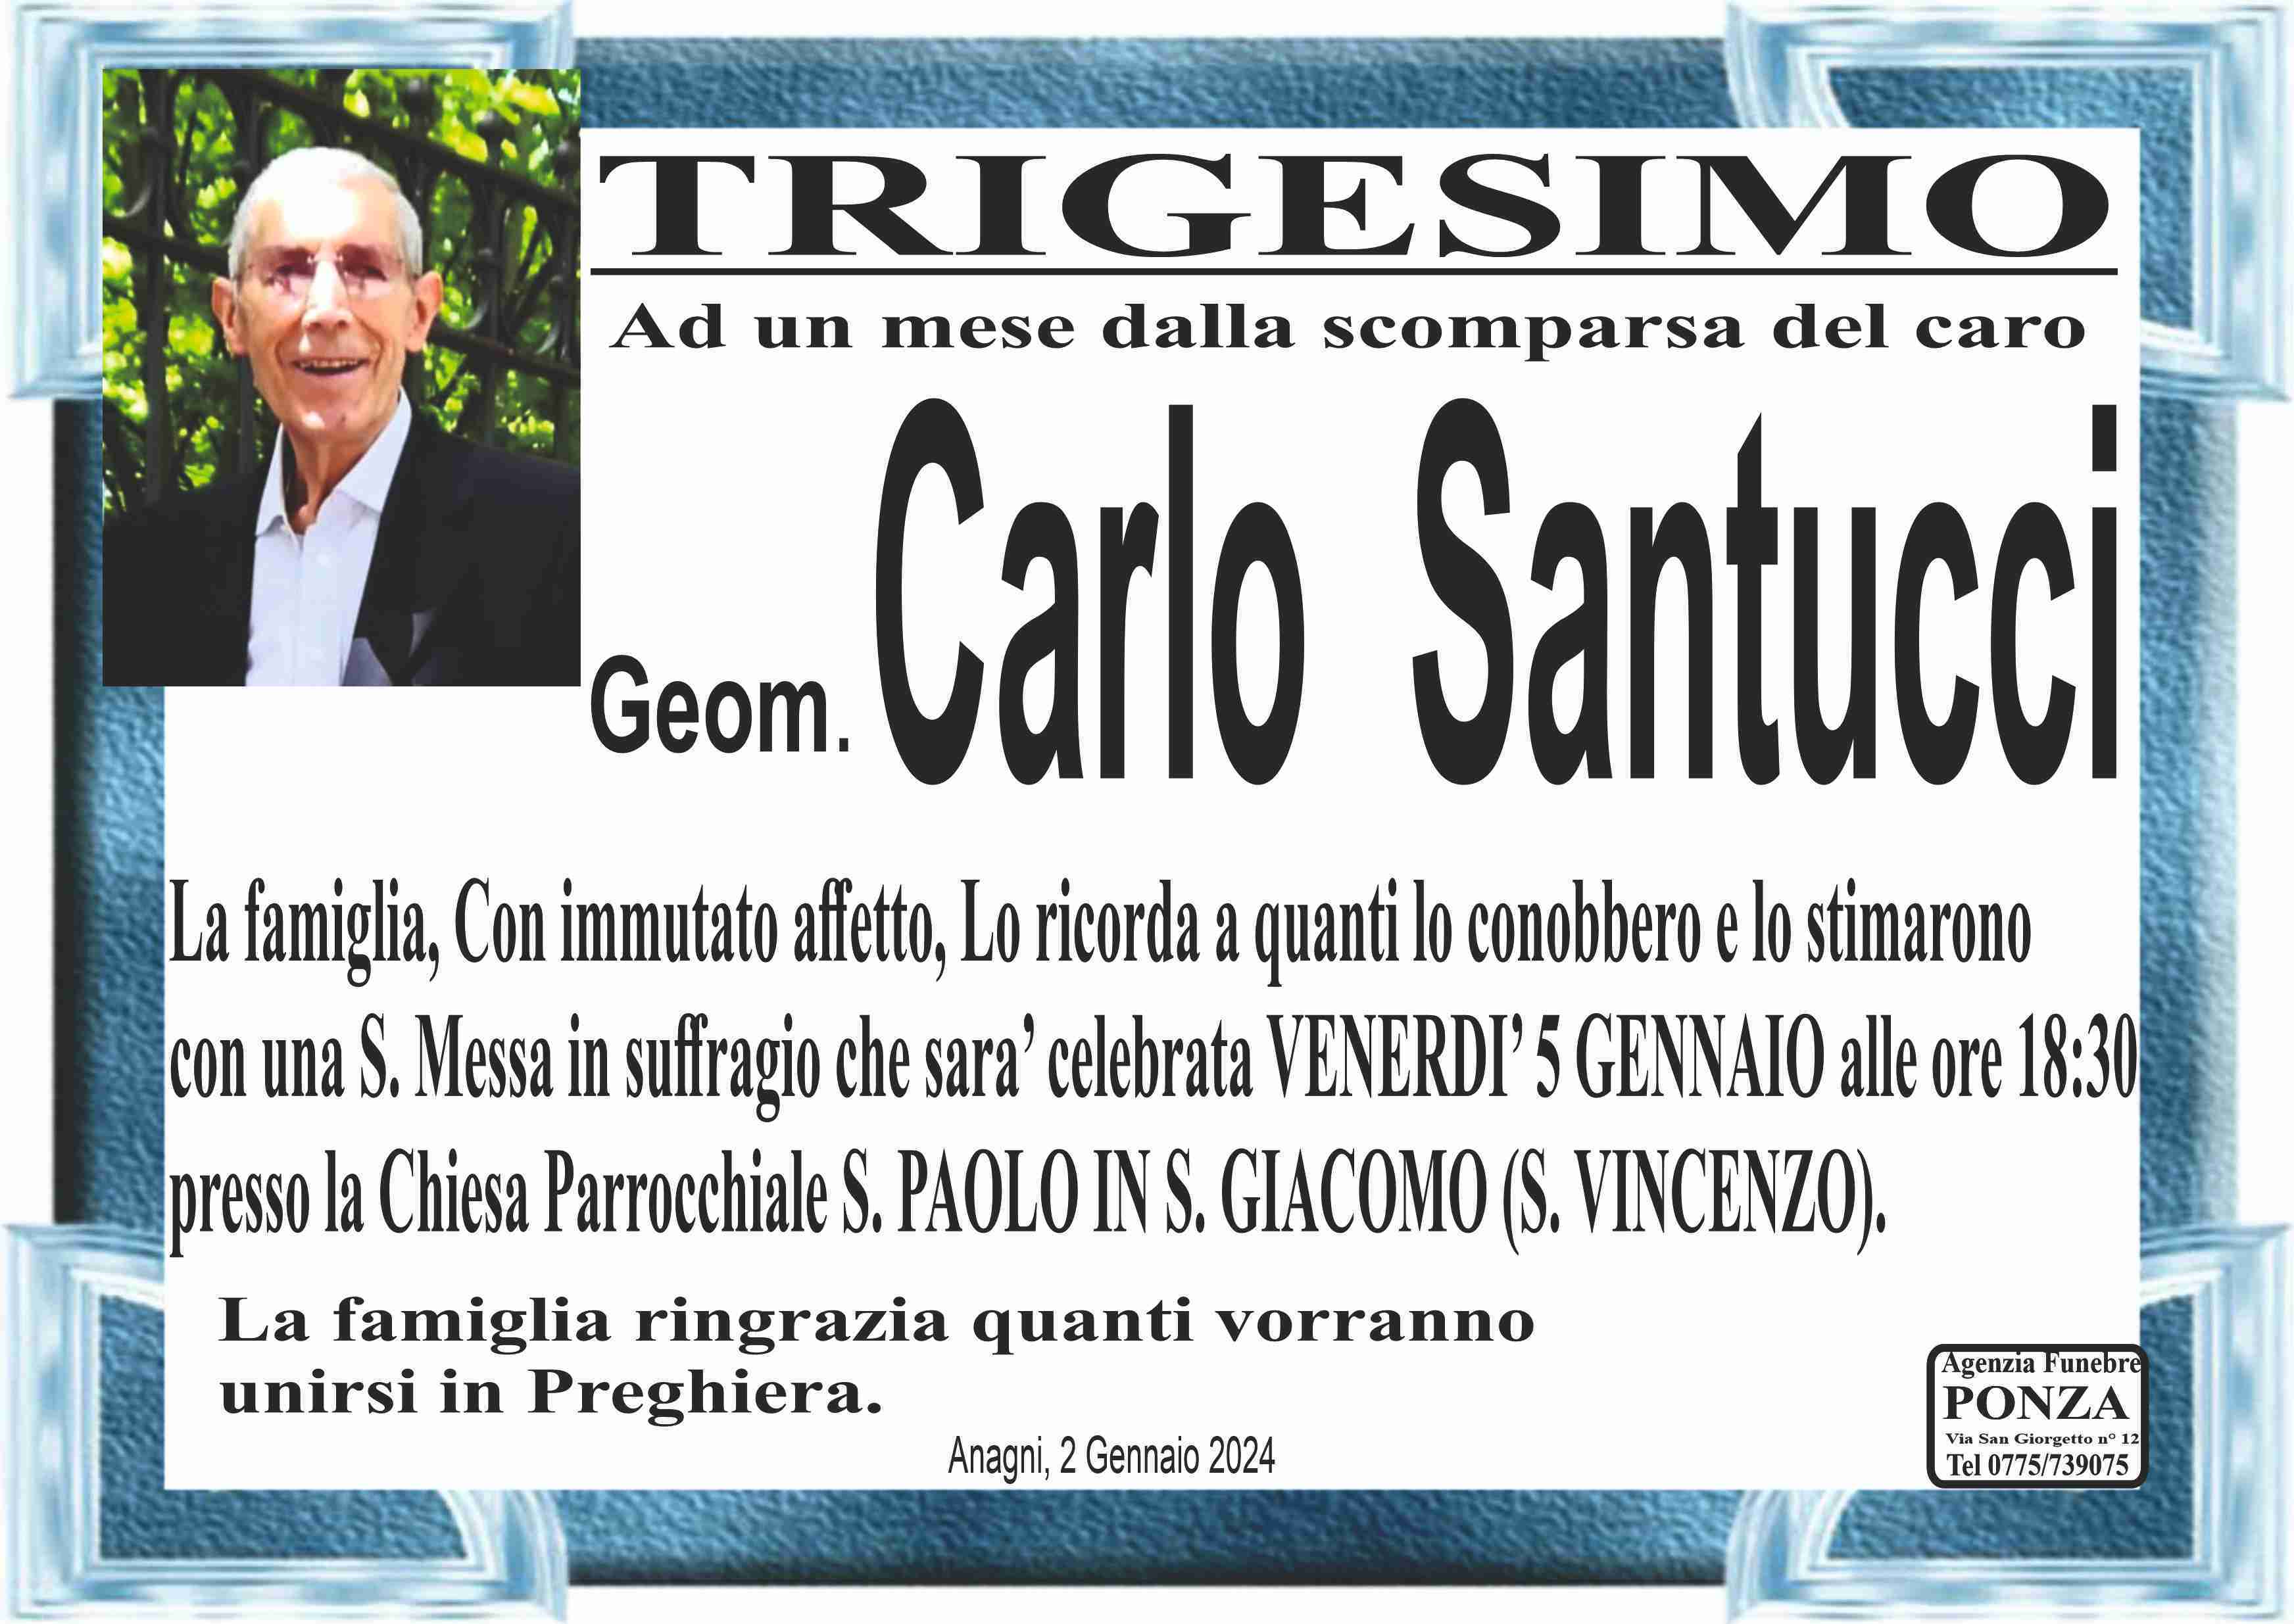 Carlo Santucci